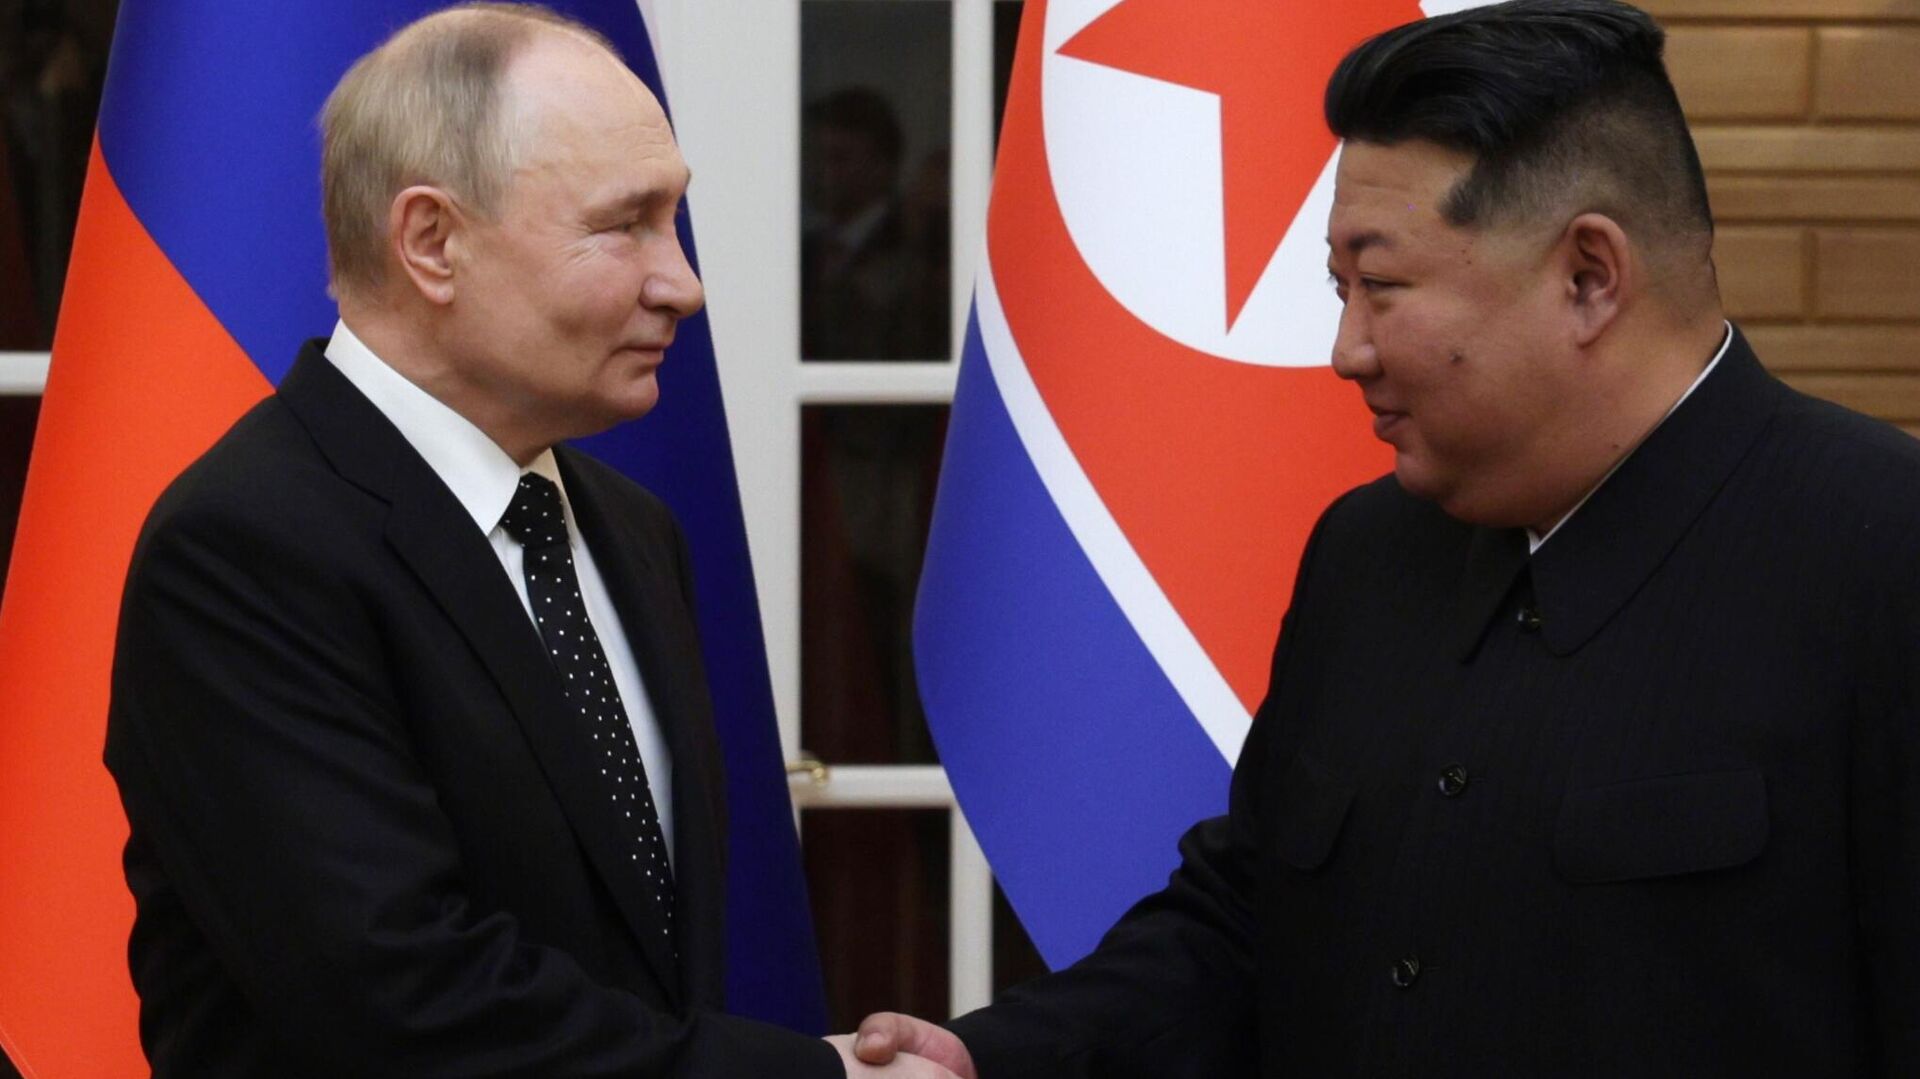 俄罗斯-朝鲜战略伙伴关系标志着全球力量动态的转变